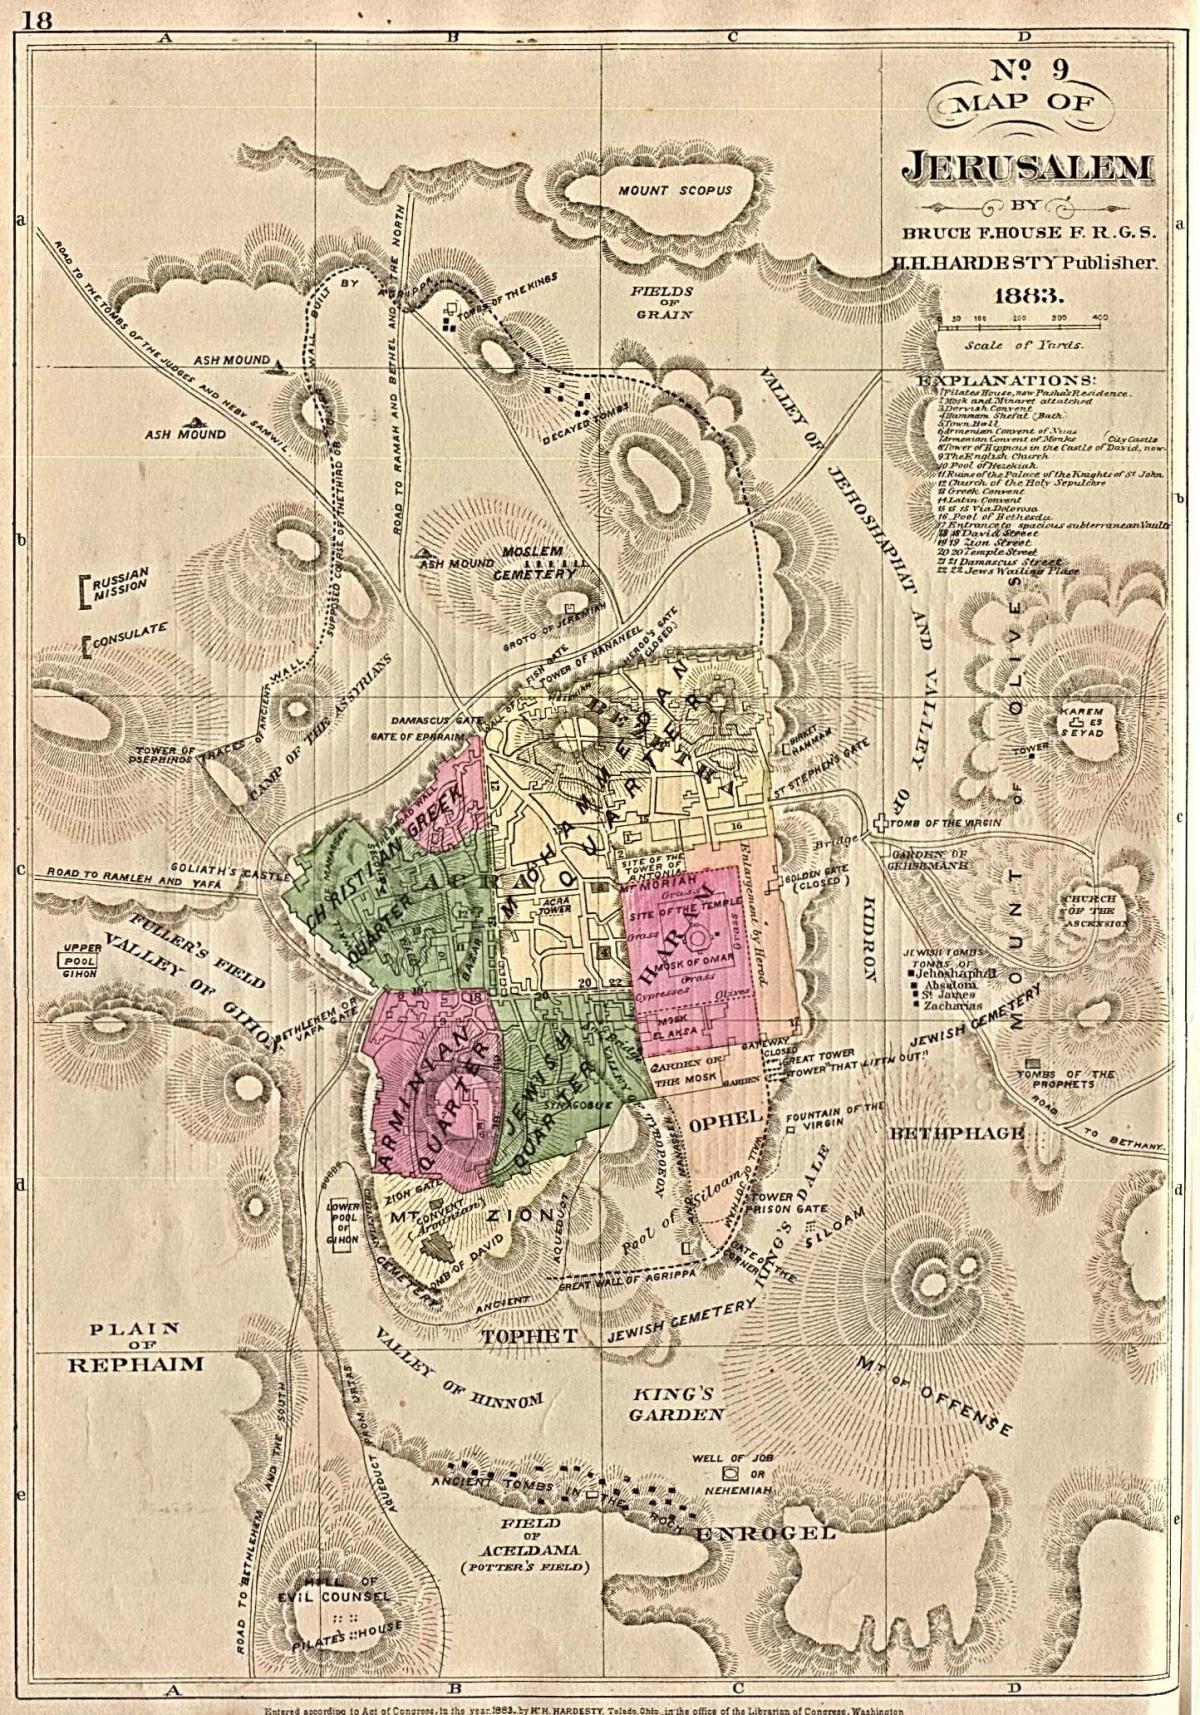 Jerusalem historical map